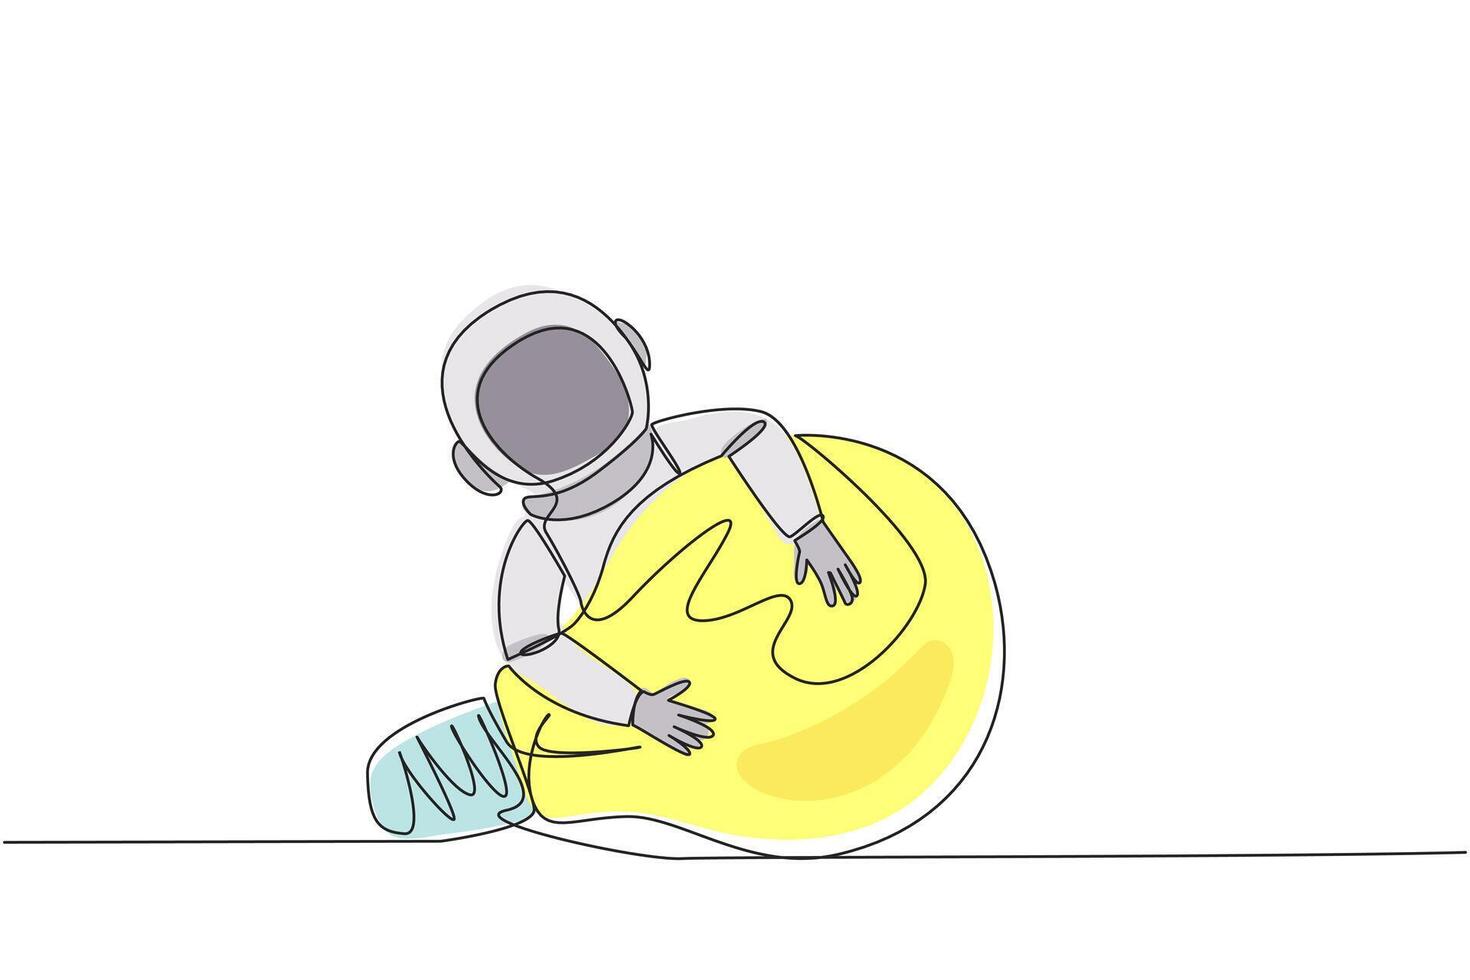 Single kontinuierlich Linie Zeichnung Astronaut umarmen die Glühbirne. Astronaut bauen das zuerst Datenverarbeitung Roboter zu erleichtern Suche zum Wasser und Eis auf Mond- Oberfläche. einer Linie Design Vektor Illustration